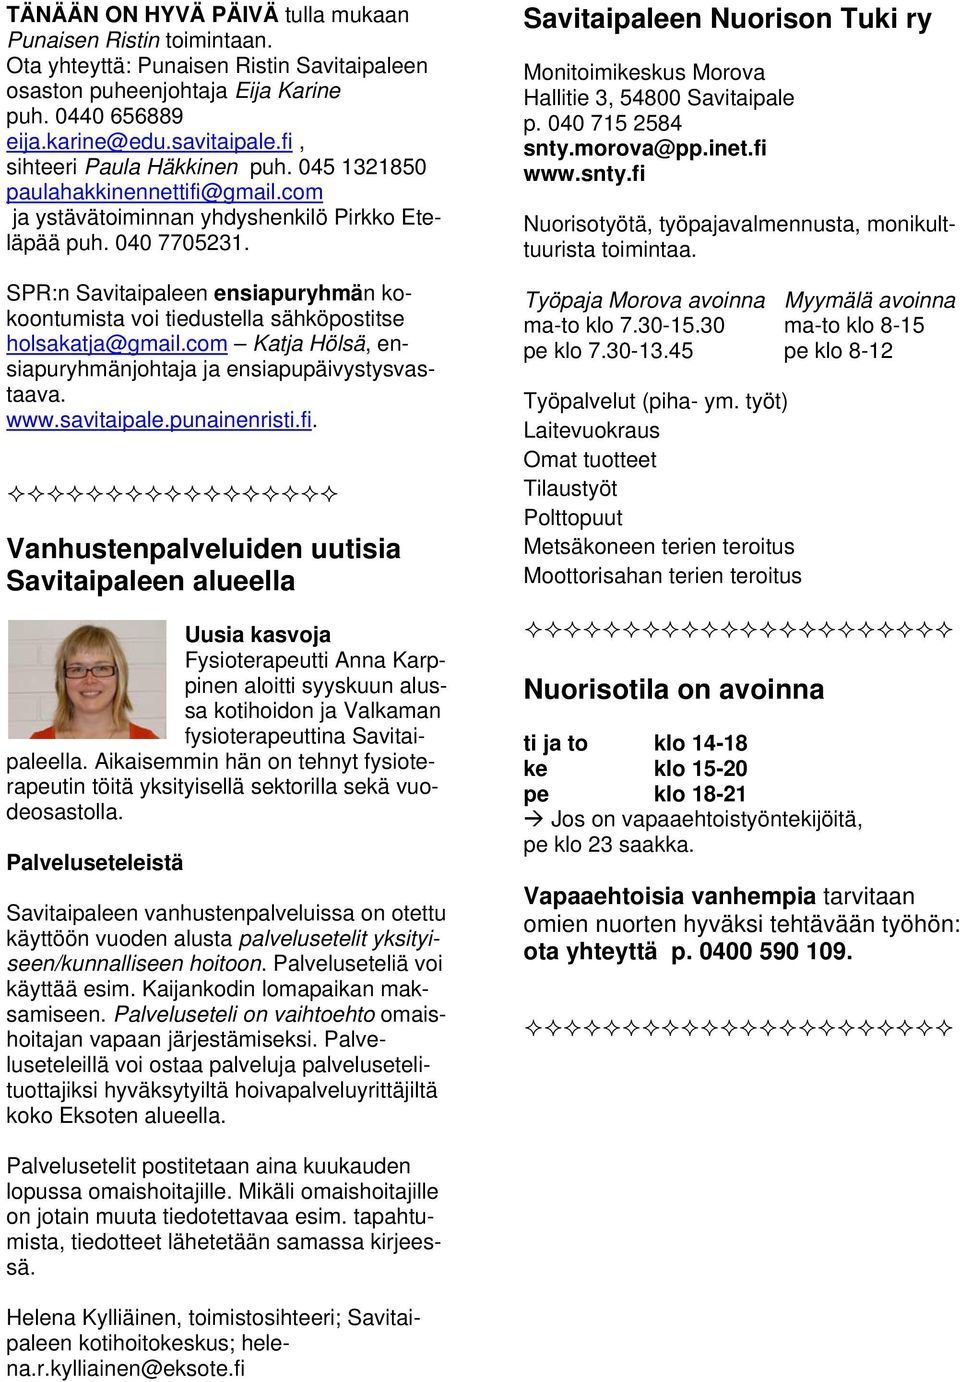 SPR:n Savitaipaleen ensiapuryhmän kokoontumista voi tiedustella sähköpostitse holsakatja@gmail.com Katja Hölsä, ensiapuryhmänjohtaja ja ensiapupäivystysvastaava. www.savitaipale.punainenristi.fi.